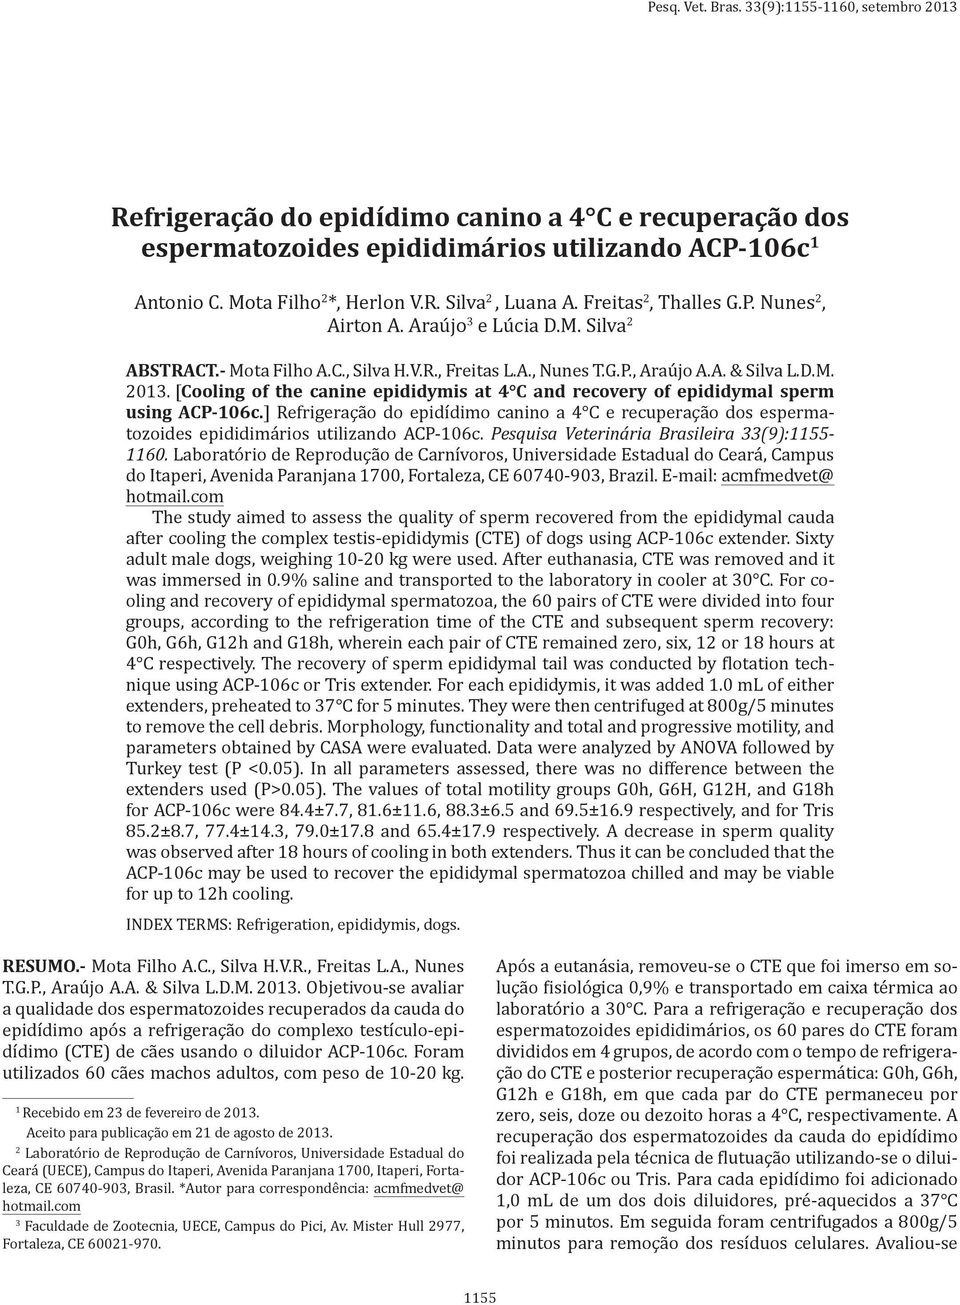 [Cooling of the canine epididymis at 4 C and recovery of epididymal sperm using ACP-106c.] Refrigeração do epidídimo canino a 4 C e recuperação dos espermatozoides epididimários utilizando ACP-106c.